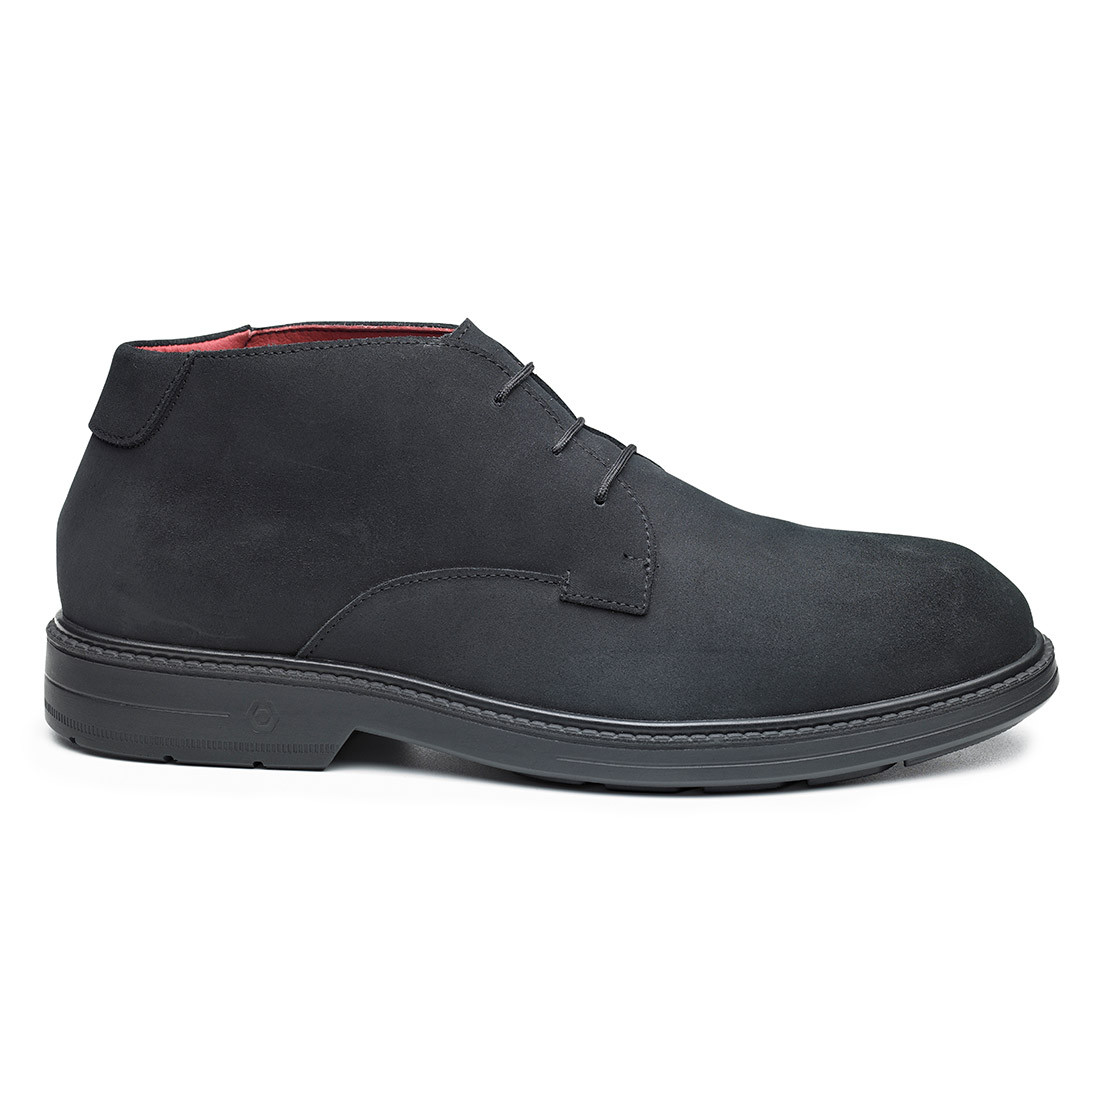 Orbit Shoe S3 ESD SRC - Les chaussures de protection